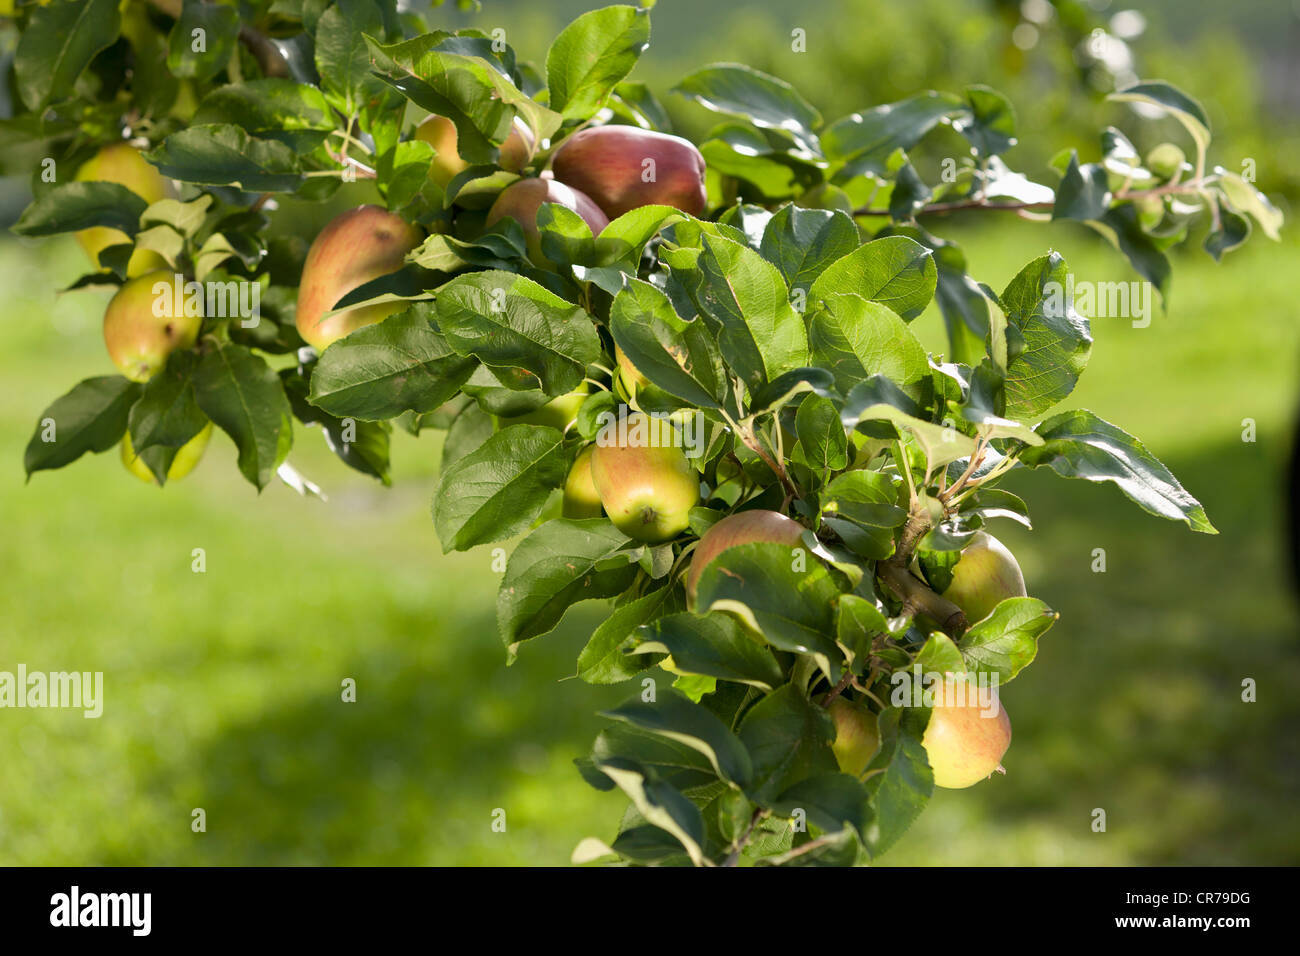 Austria, Styria, View of apple tree Stock Photo